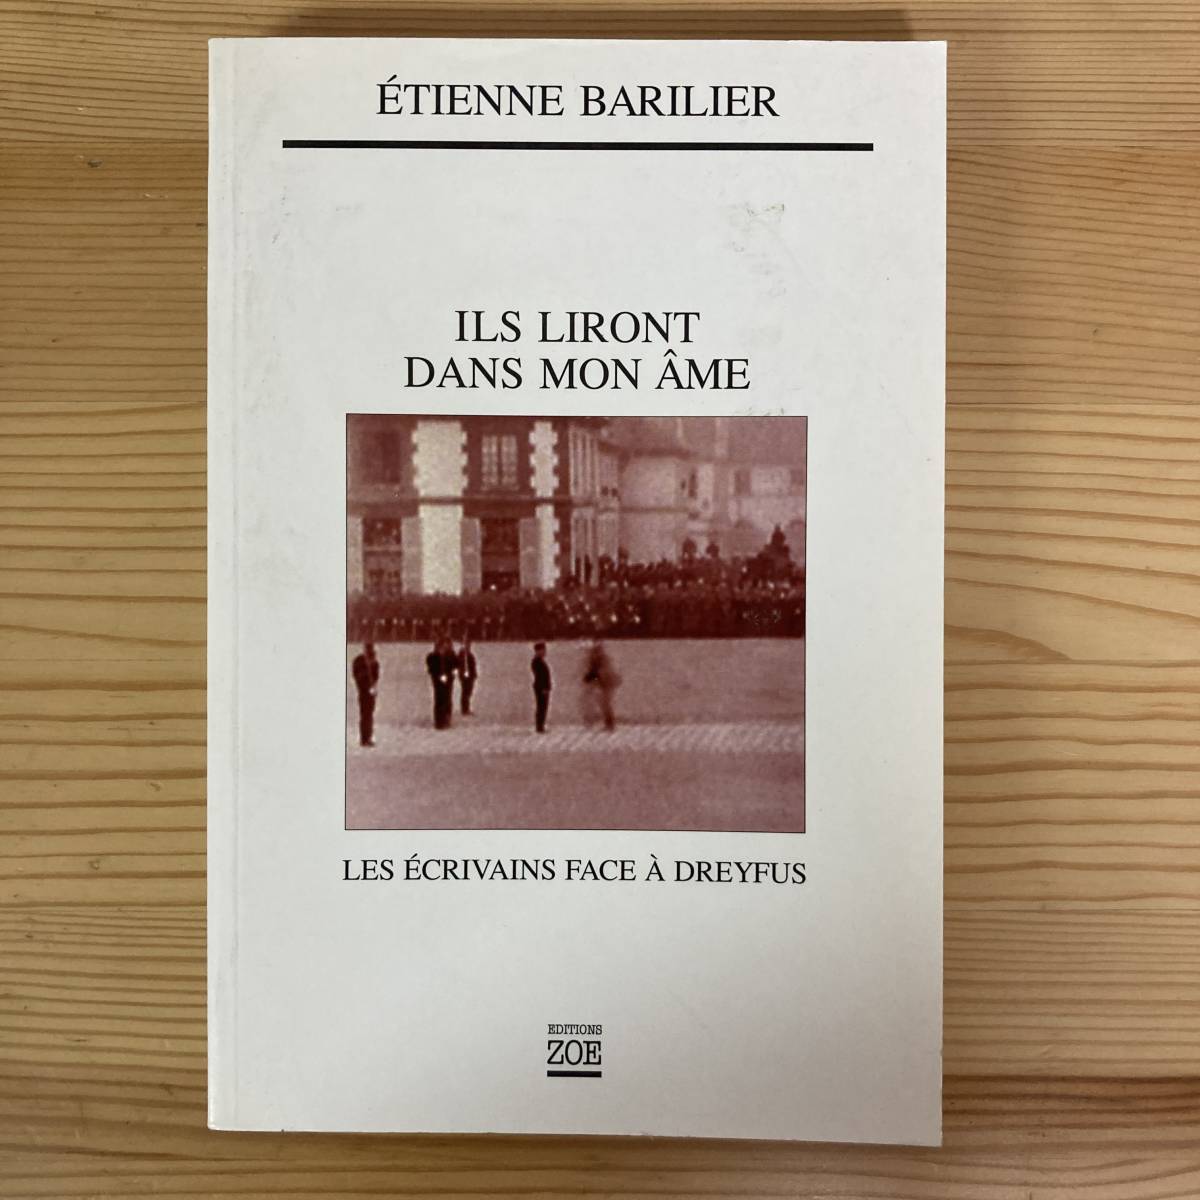 【仏語洋書】ILS LIRONT DANS MON AME / Etienne Barilier（著）【ドレフュス事件】_画像1